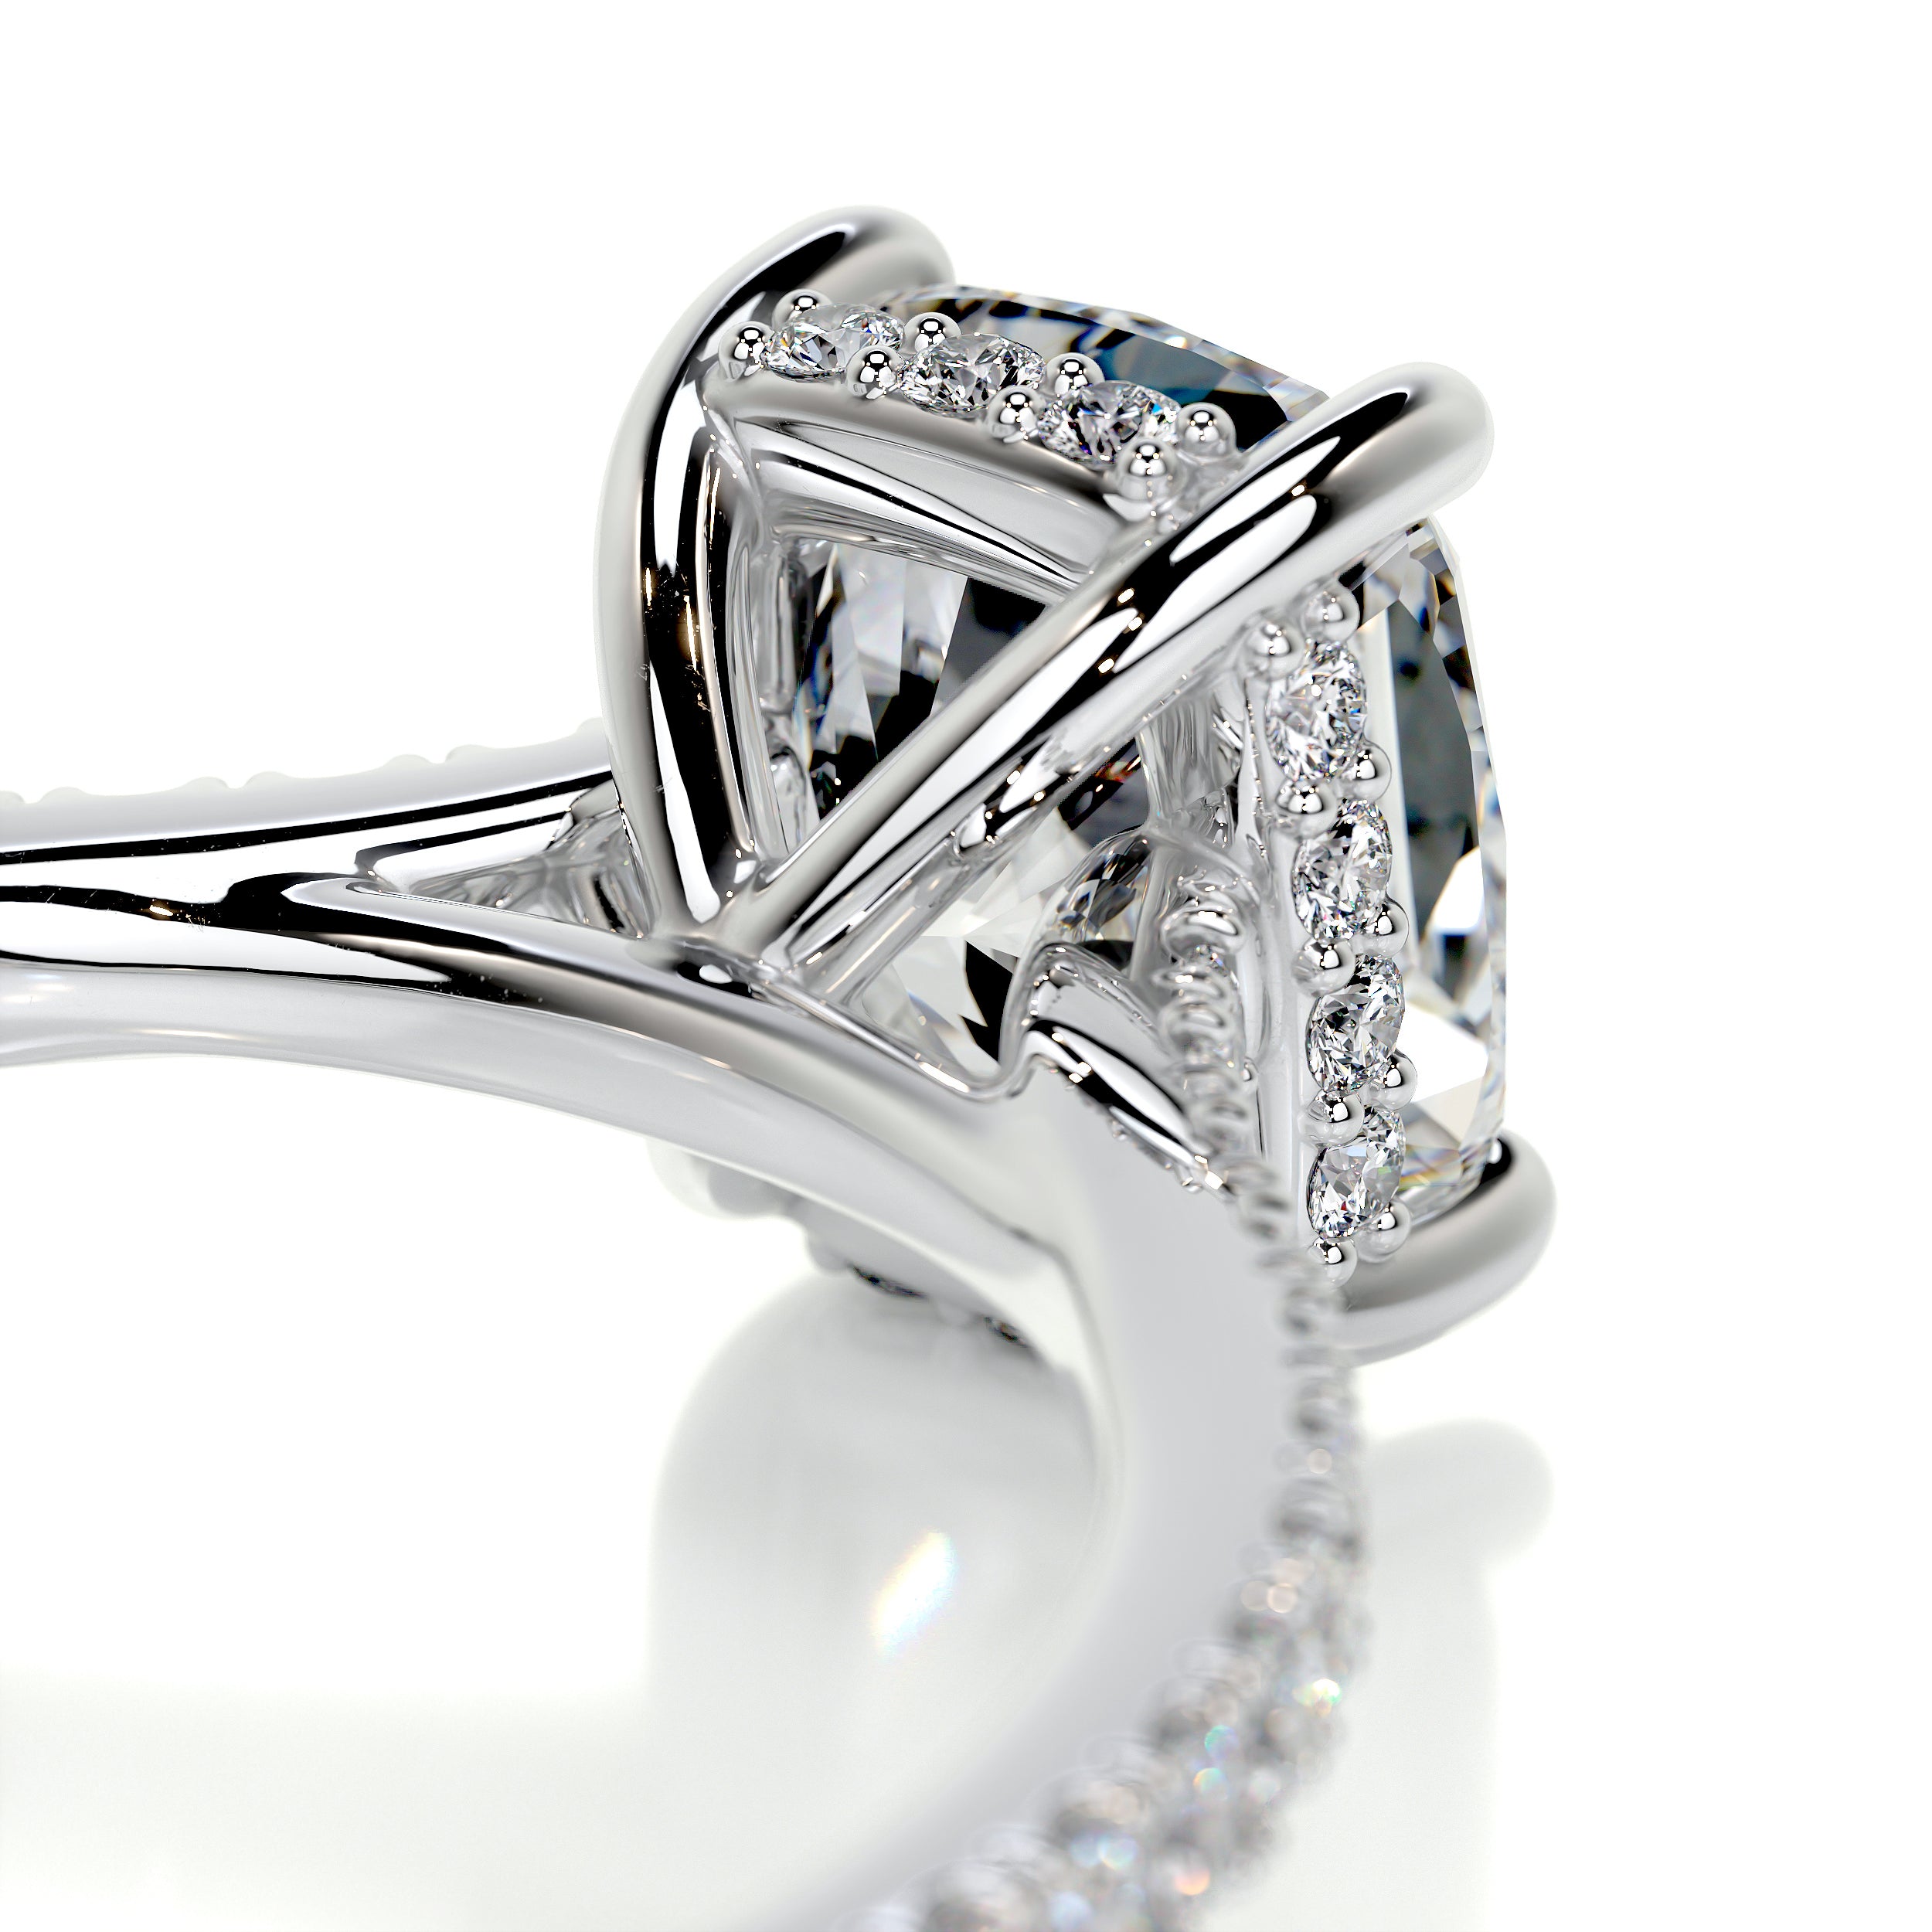 Deandra Diamond Engagement Ring -14K White Gold